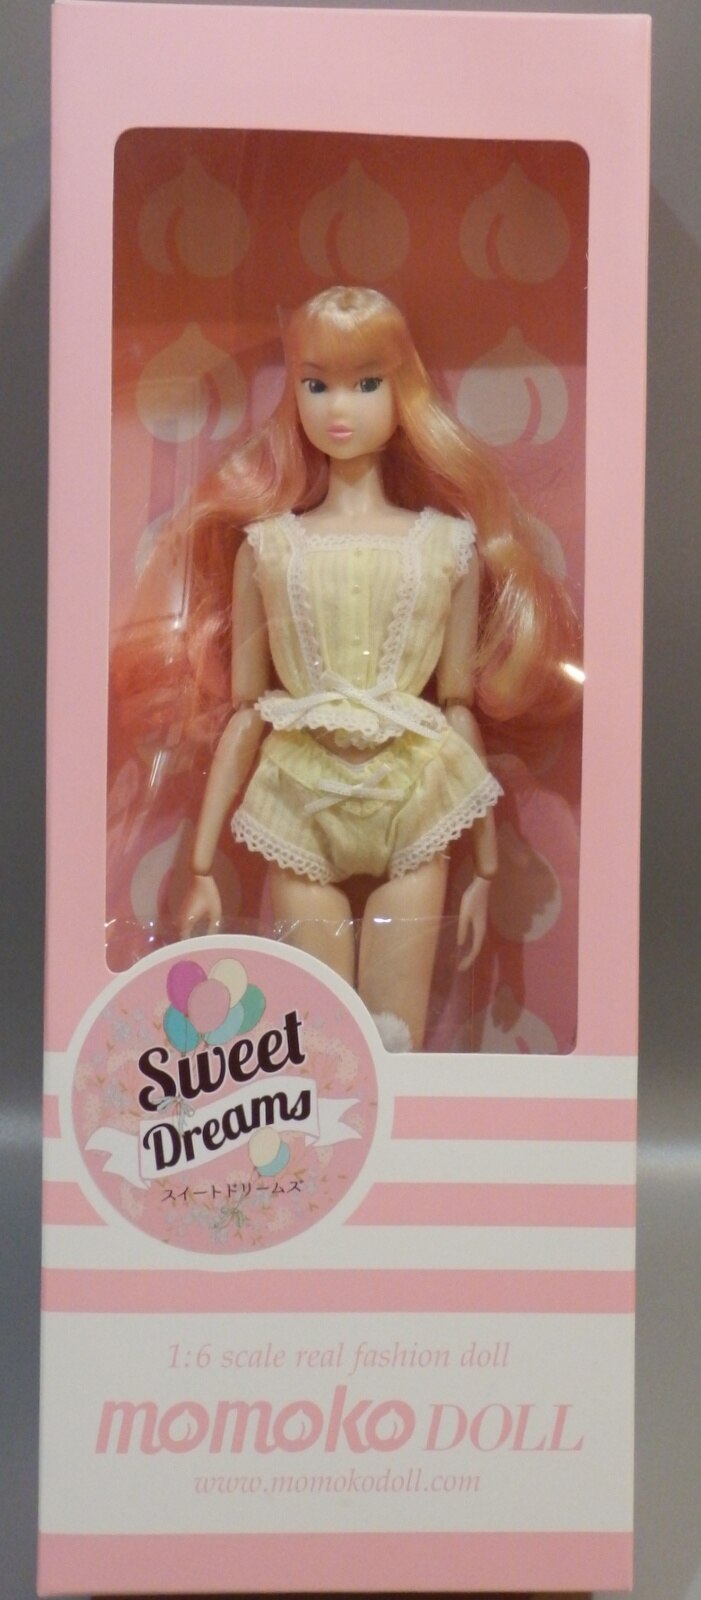 Momokodoll Sweet Dreams Sekiguchi 27cm Doll Figure Japan 2018 for sale online 